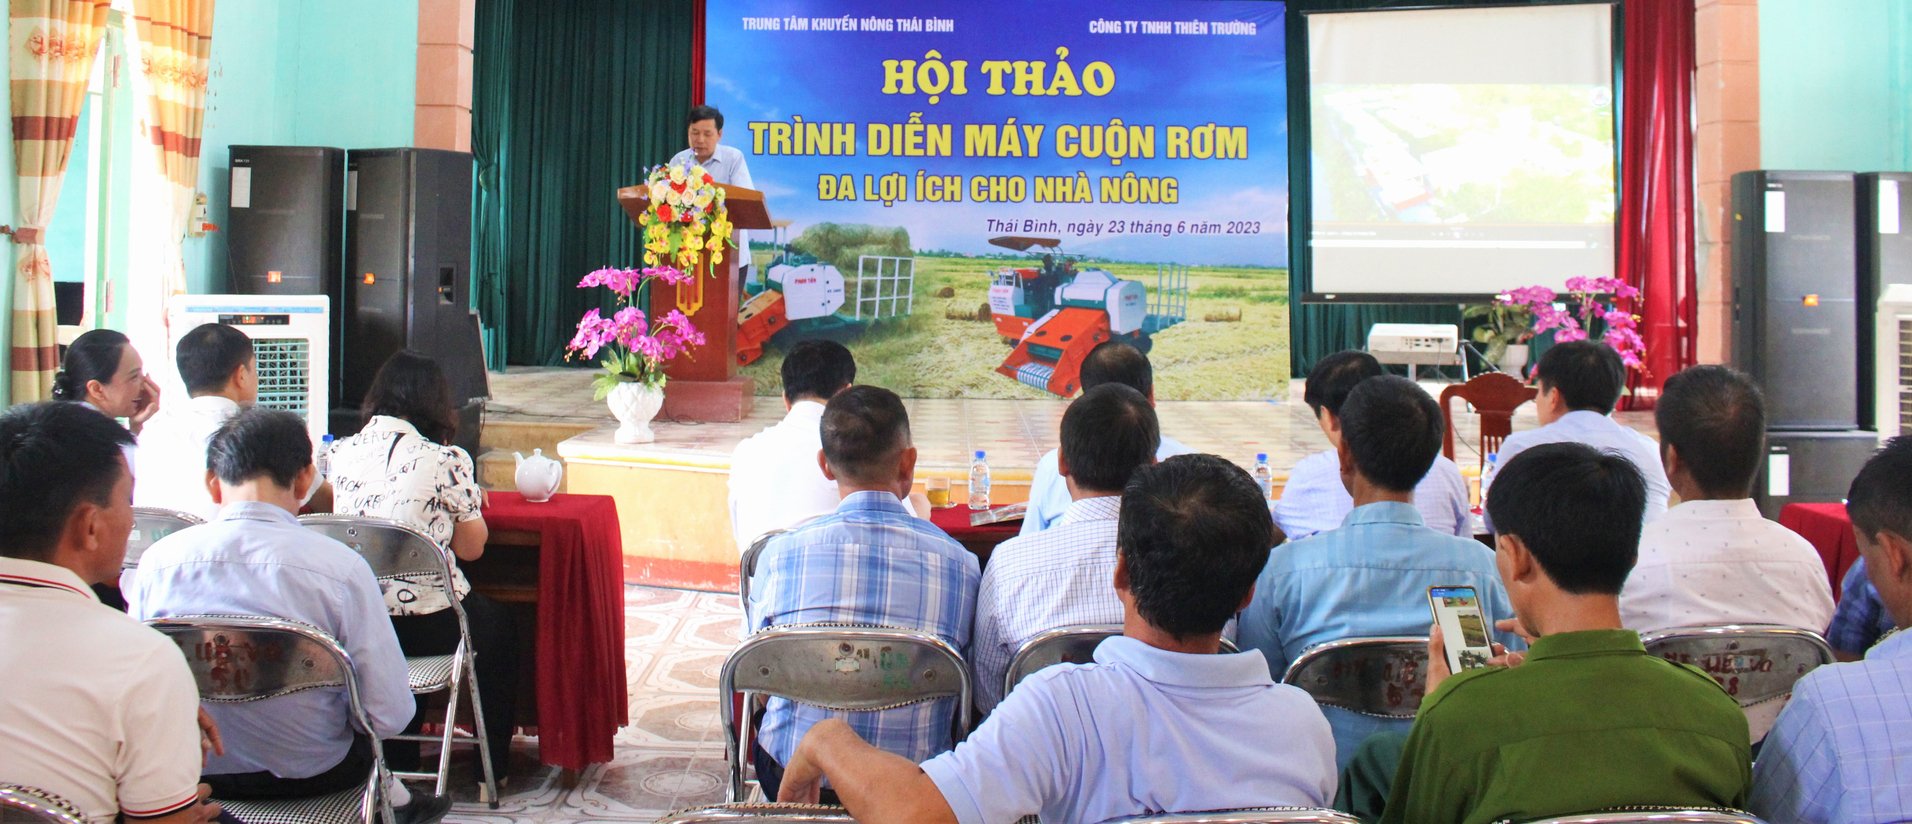 Hội thảo trình diễn máy cuộn rơm rạ đa lợi ích cho nhà nông có sự tham gia của đông đảo cơ quan quản lý nhà nước, doanh nghiệp, HTX, hộ sản xuất lúa. Ảnh: Trung Quân.